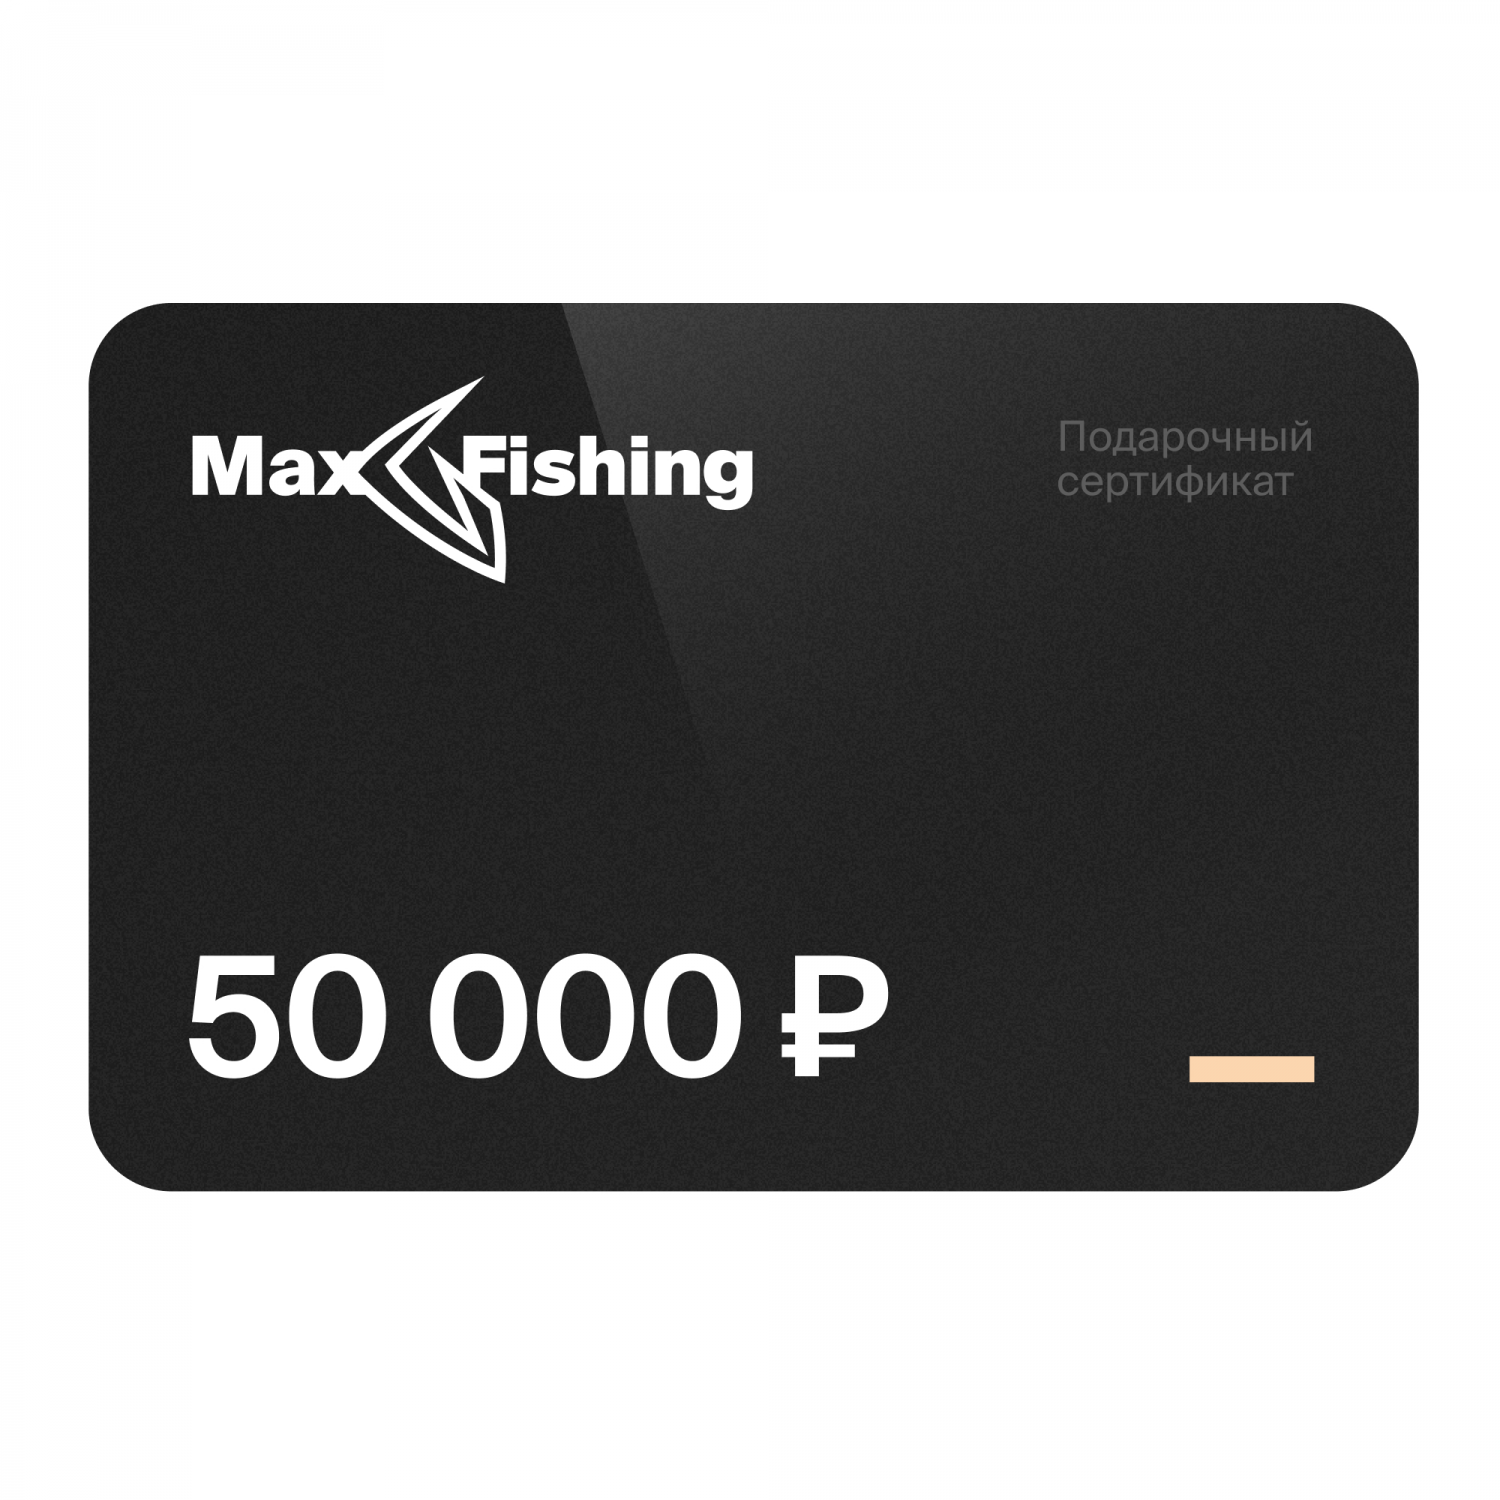 Подарочный сертификат MaxFishing 50 000 ₽ подарочный сертификат maxfishing 15